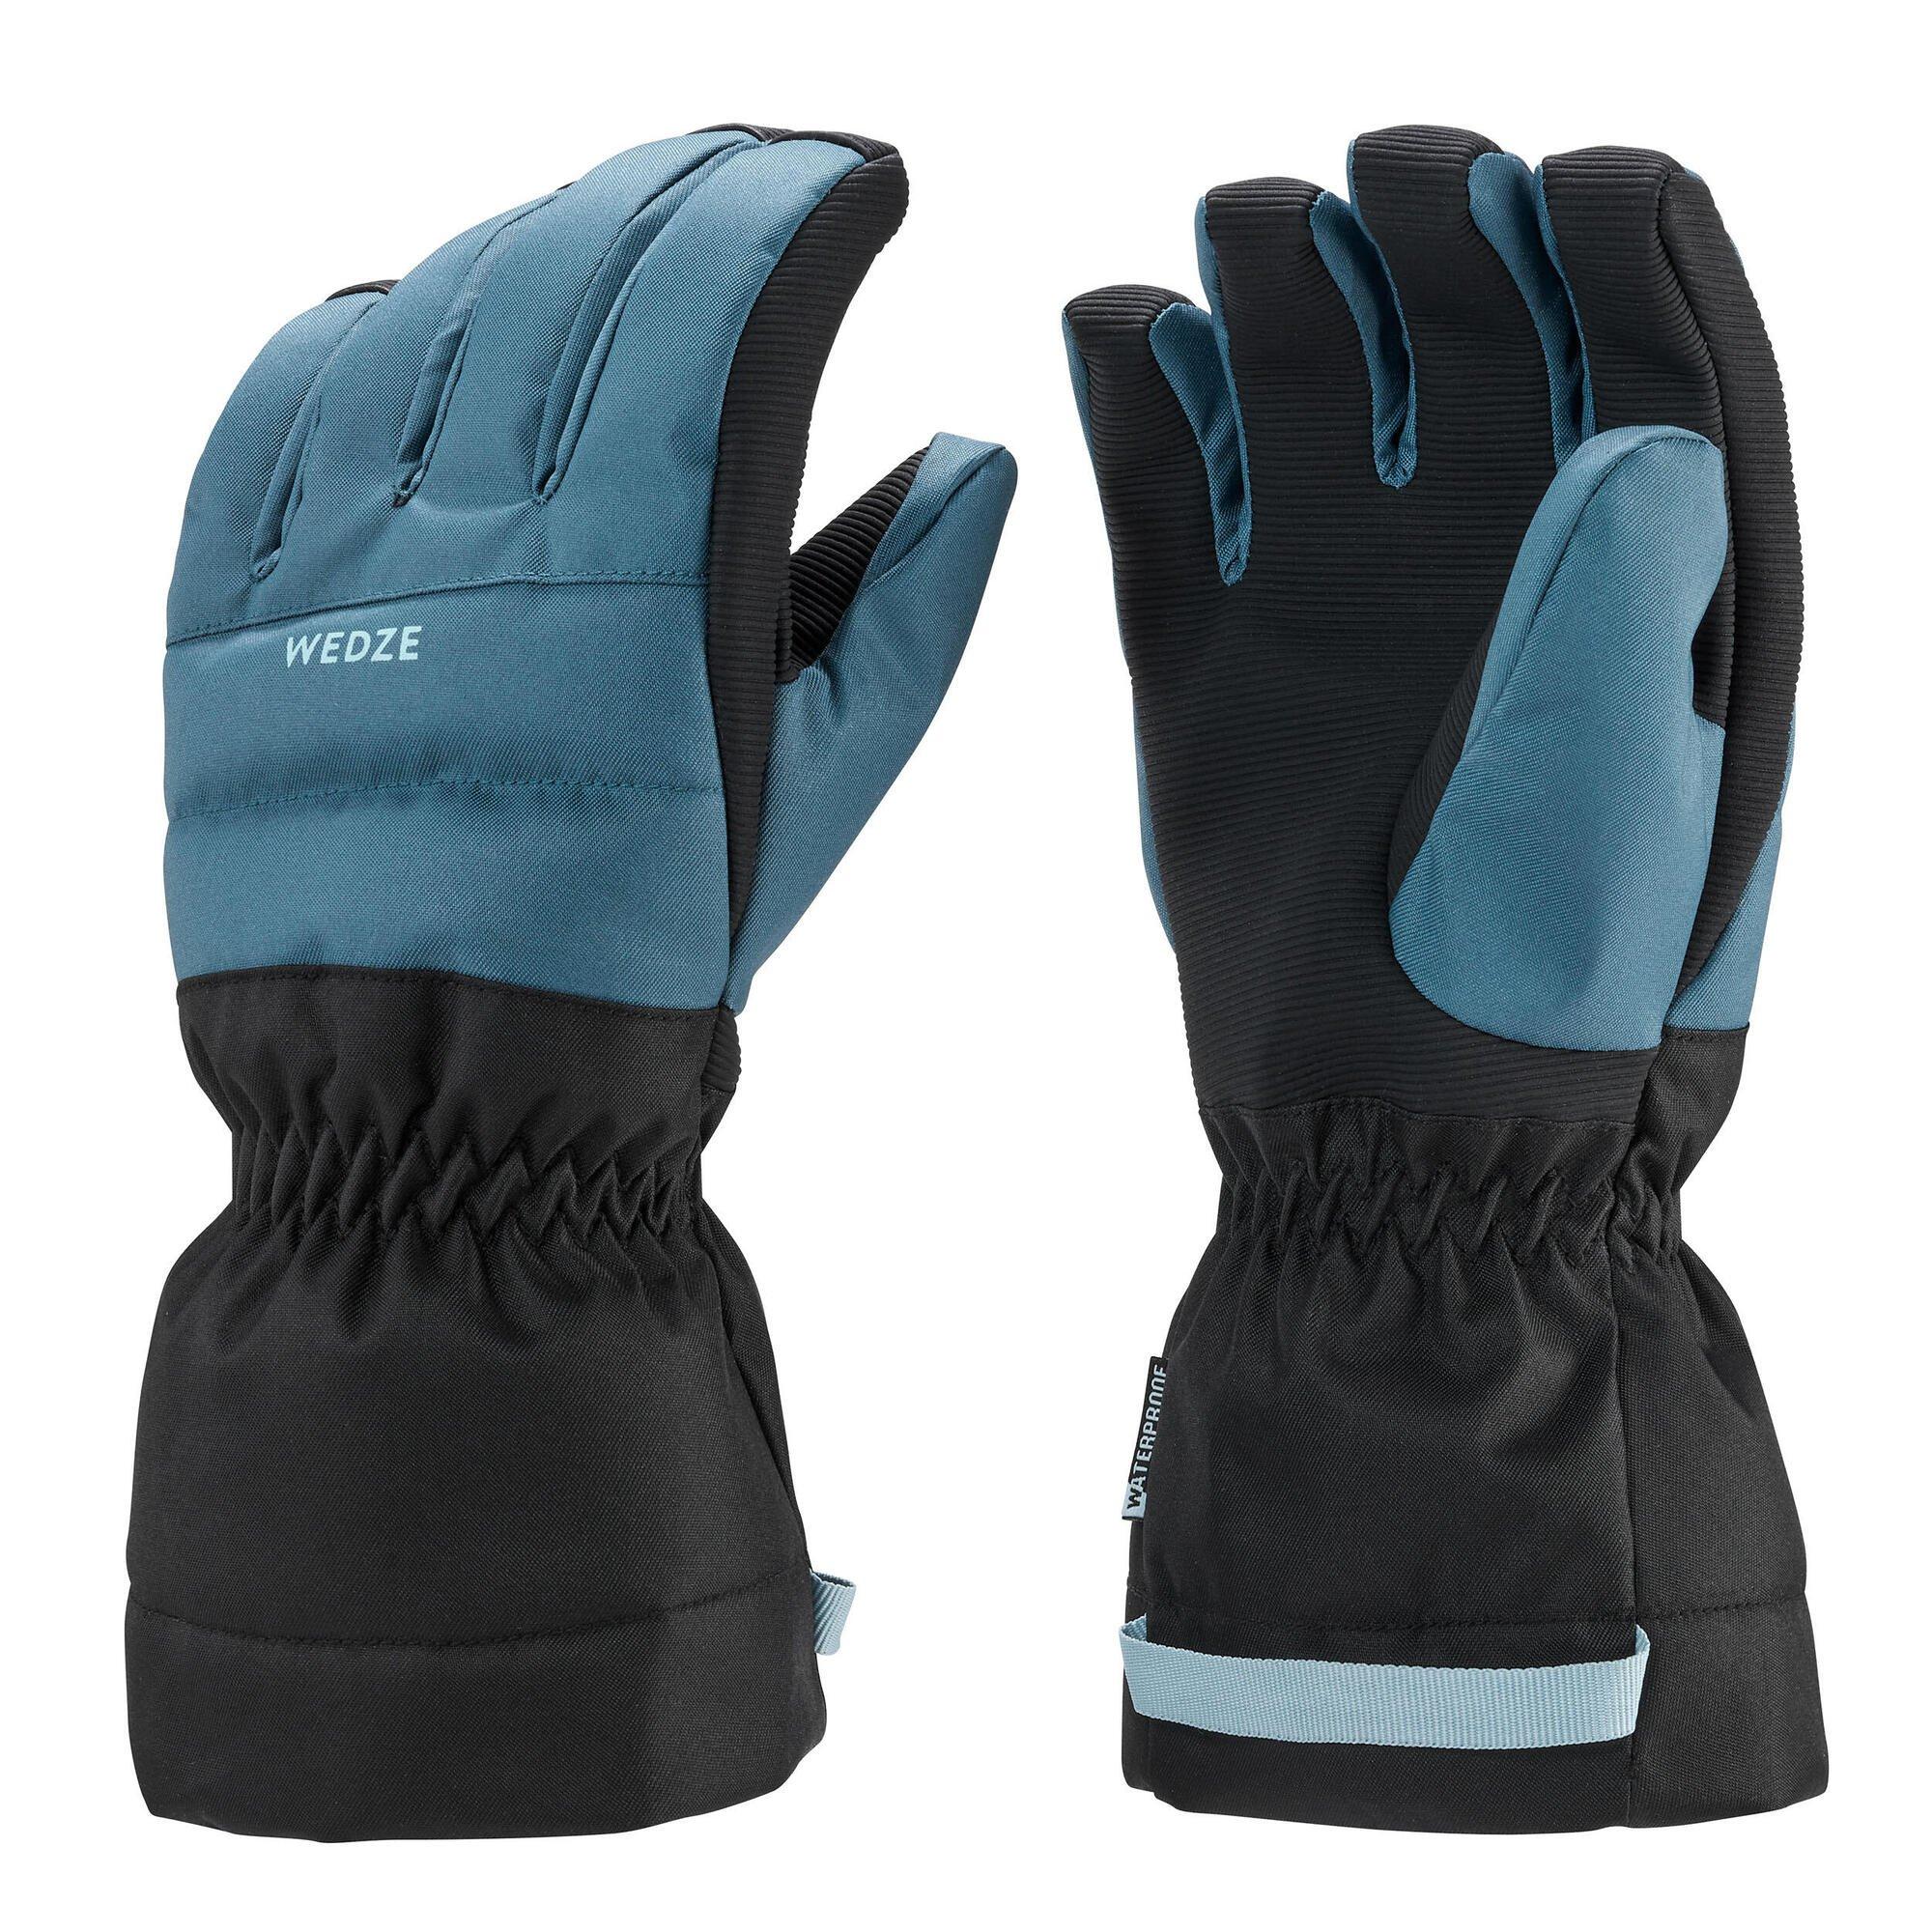 Теплые и водонепроницаемые лыжные перчатки Decathlon 500 Джинсовый Wedze, синий фото